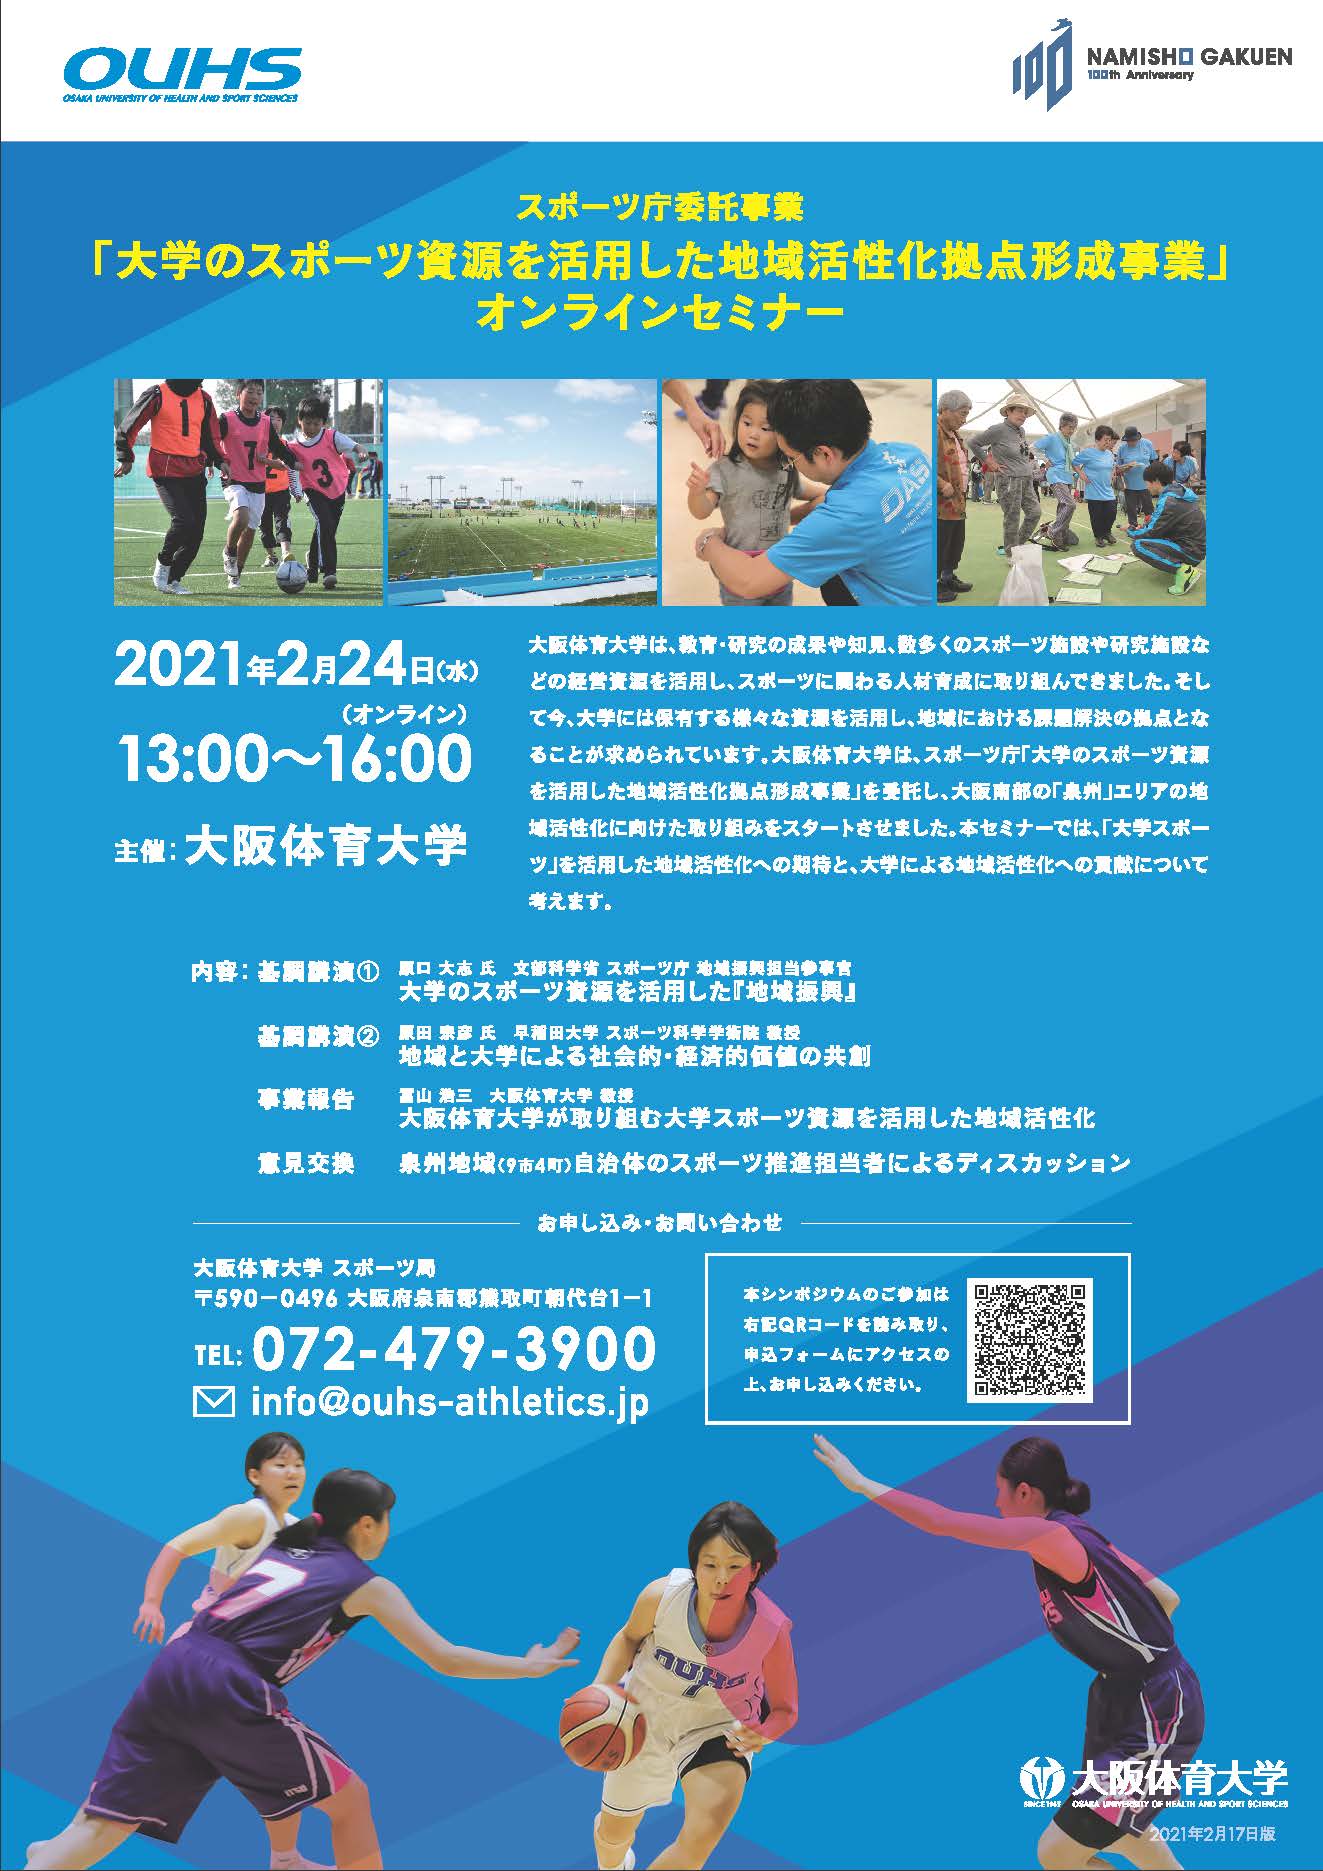 オンラインセミナーのお知らせ　大阪体育大学　大学のスポーツ資源を活用した地域活性化拠点形成事業